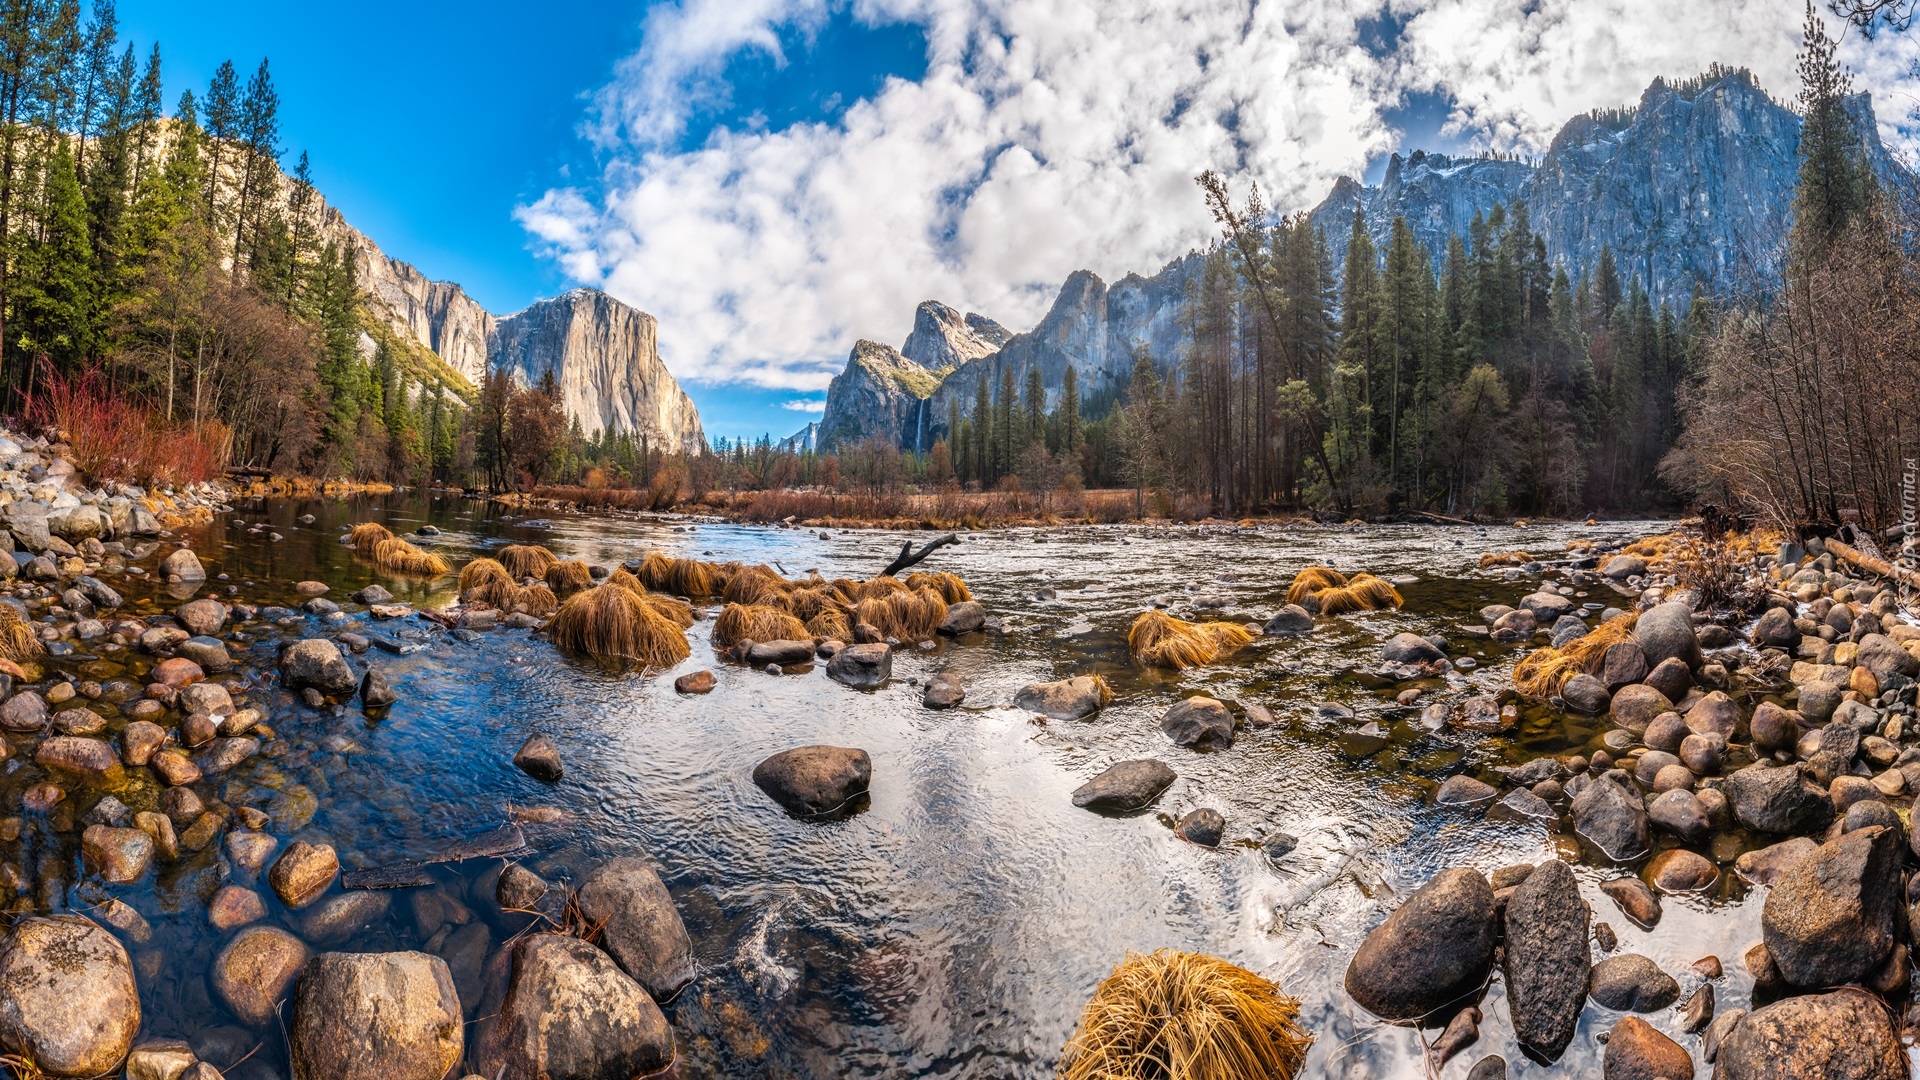 Stany Zjednoczone, Kalifornia, Park Narodowy Yosemite, Góry, Sierra Nevada, Rzeka, Merced River, Kamienie, Drzewa, Chmury